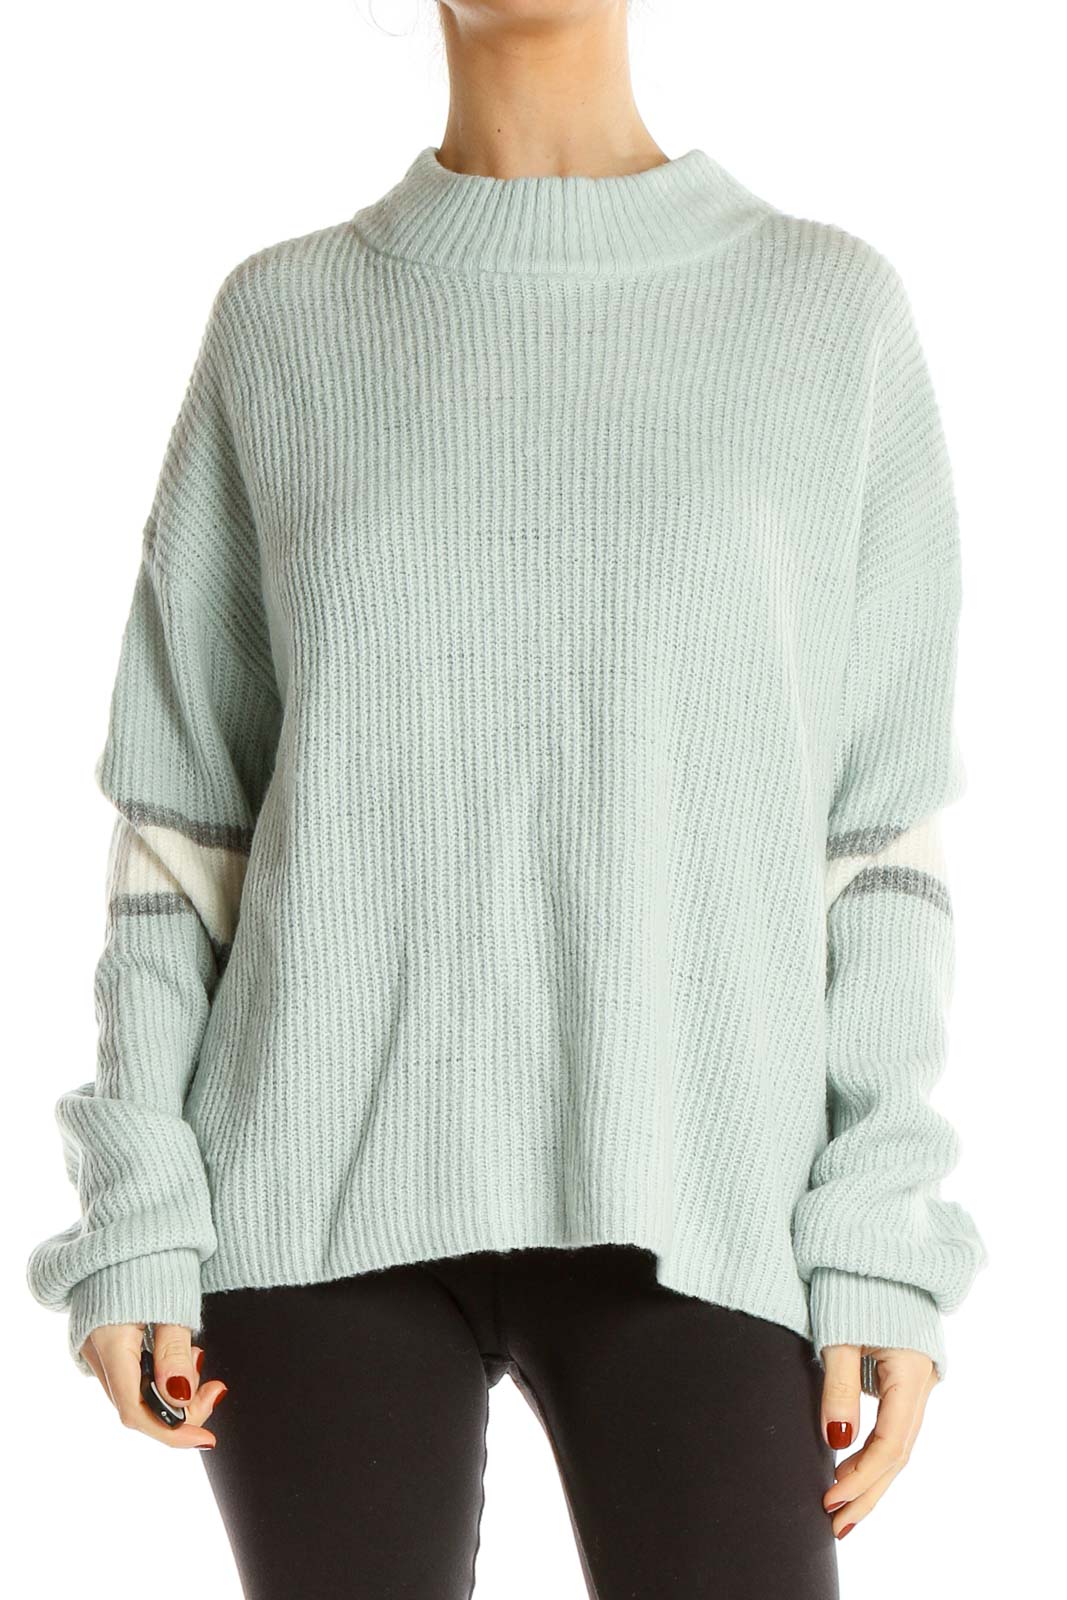 Blue Mockneck Sweater Front